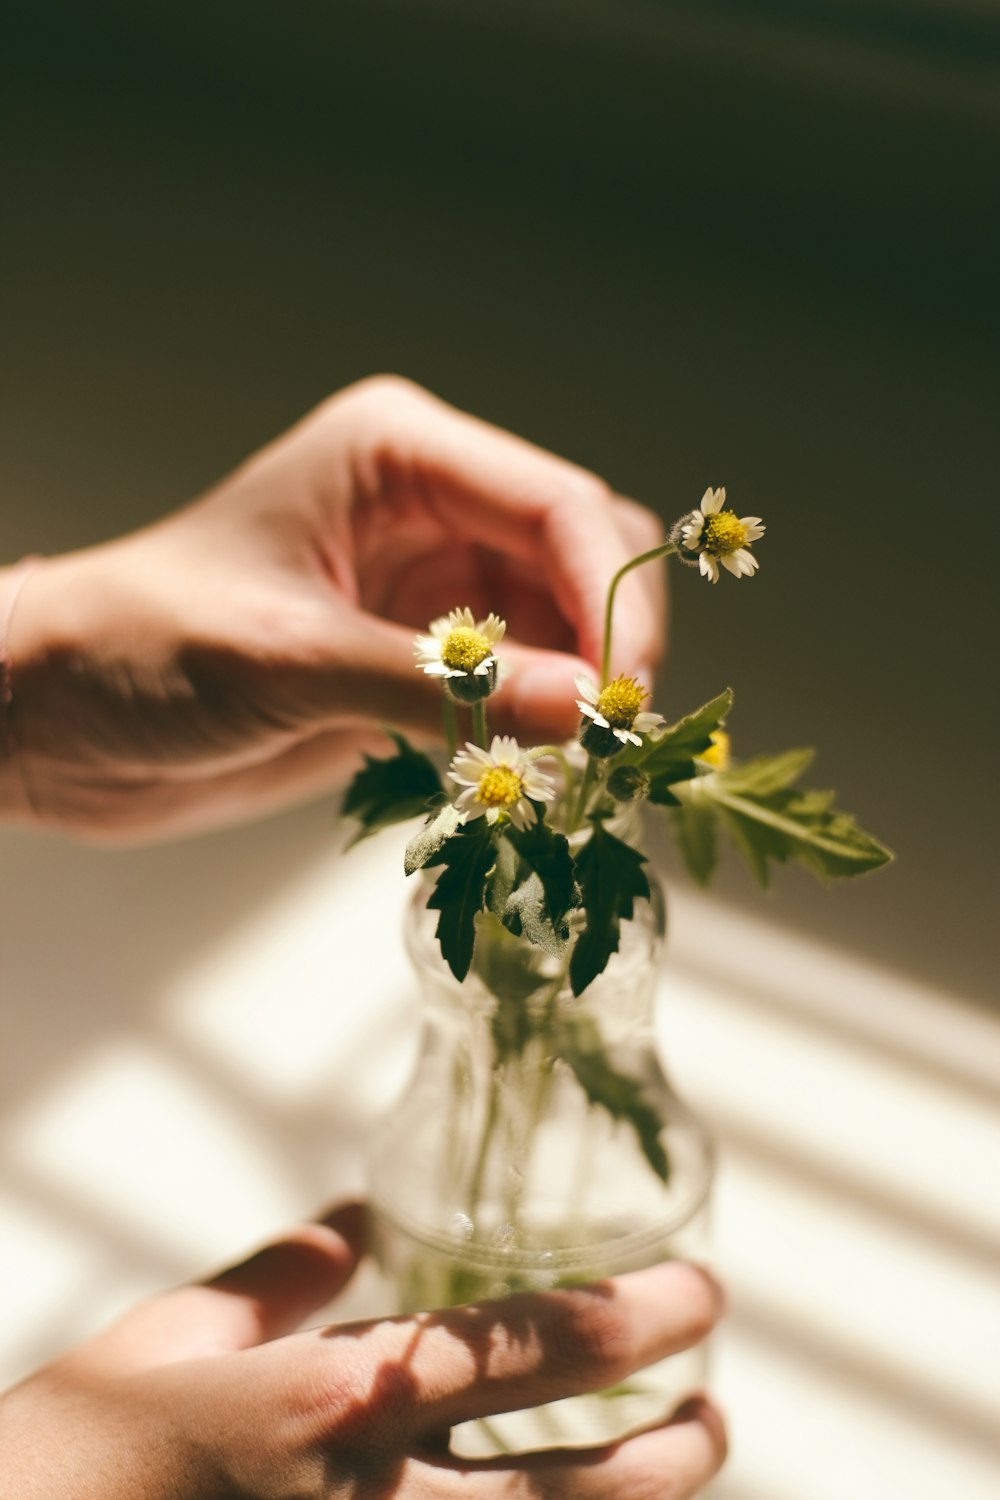 mains de la personne tenant la feuille de fleur de marguerite blanche et le vase en verre transparent